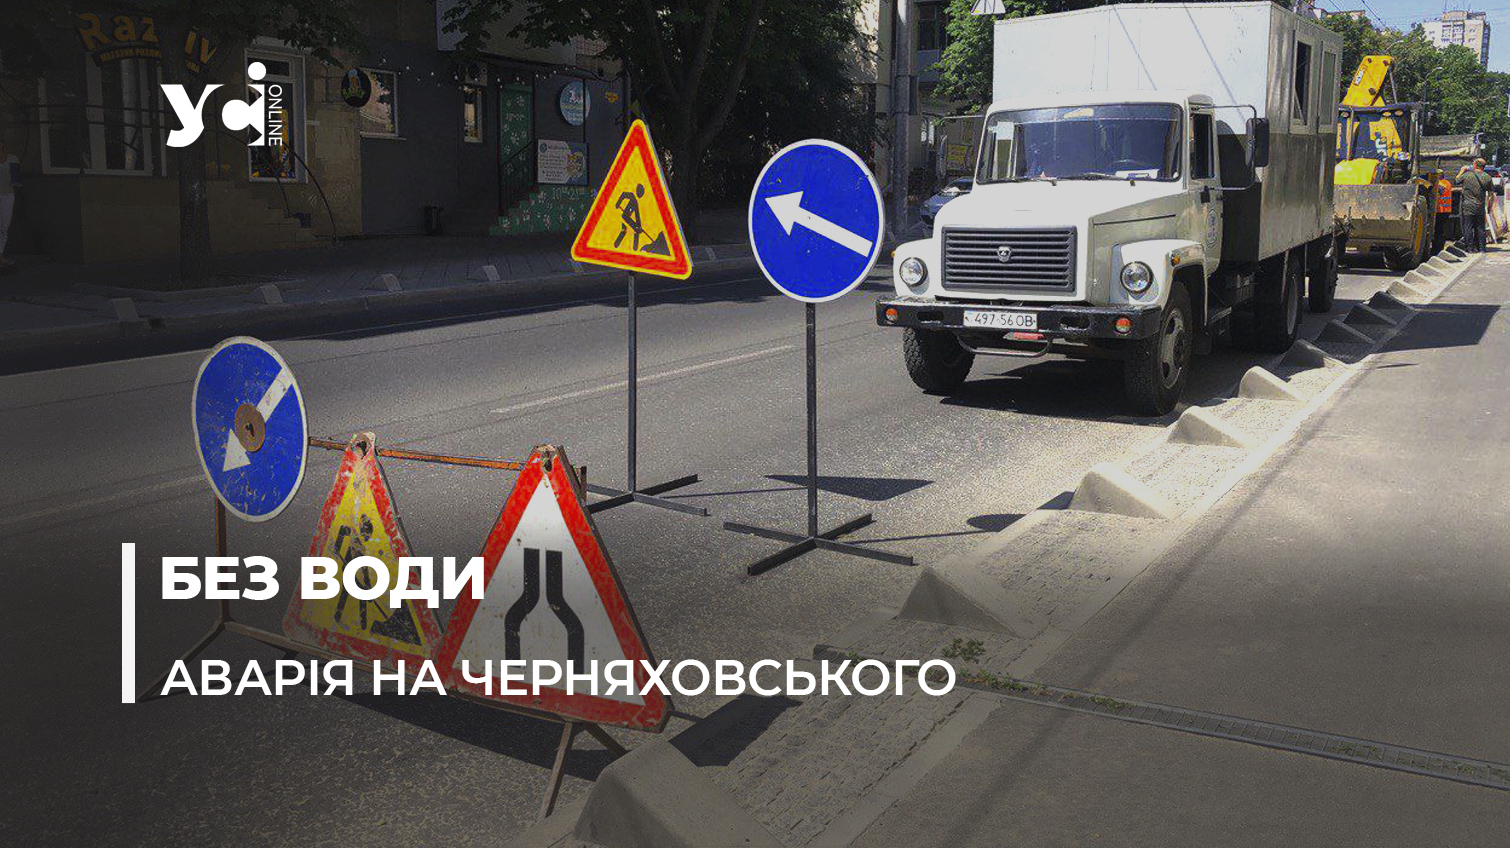 Мешканці Черняховського залишилися на два дні без води: через аварійні роботи перекрита частина дорожнього руху (фото, відео) «фото»